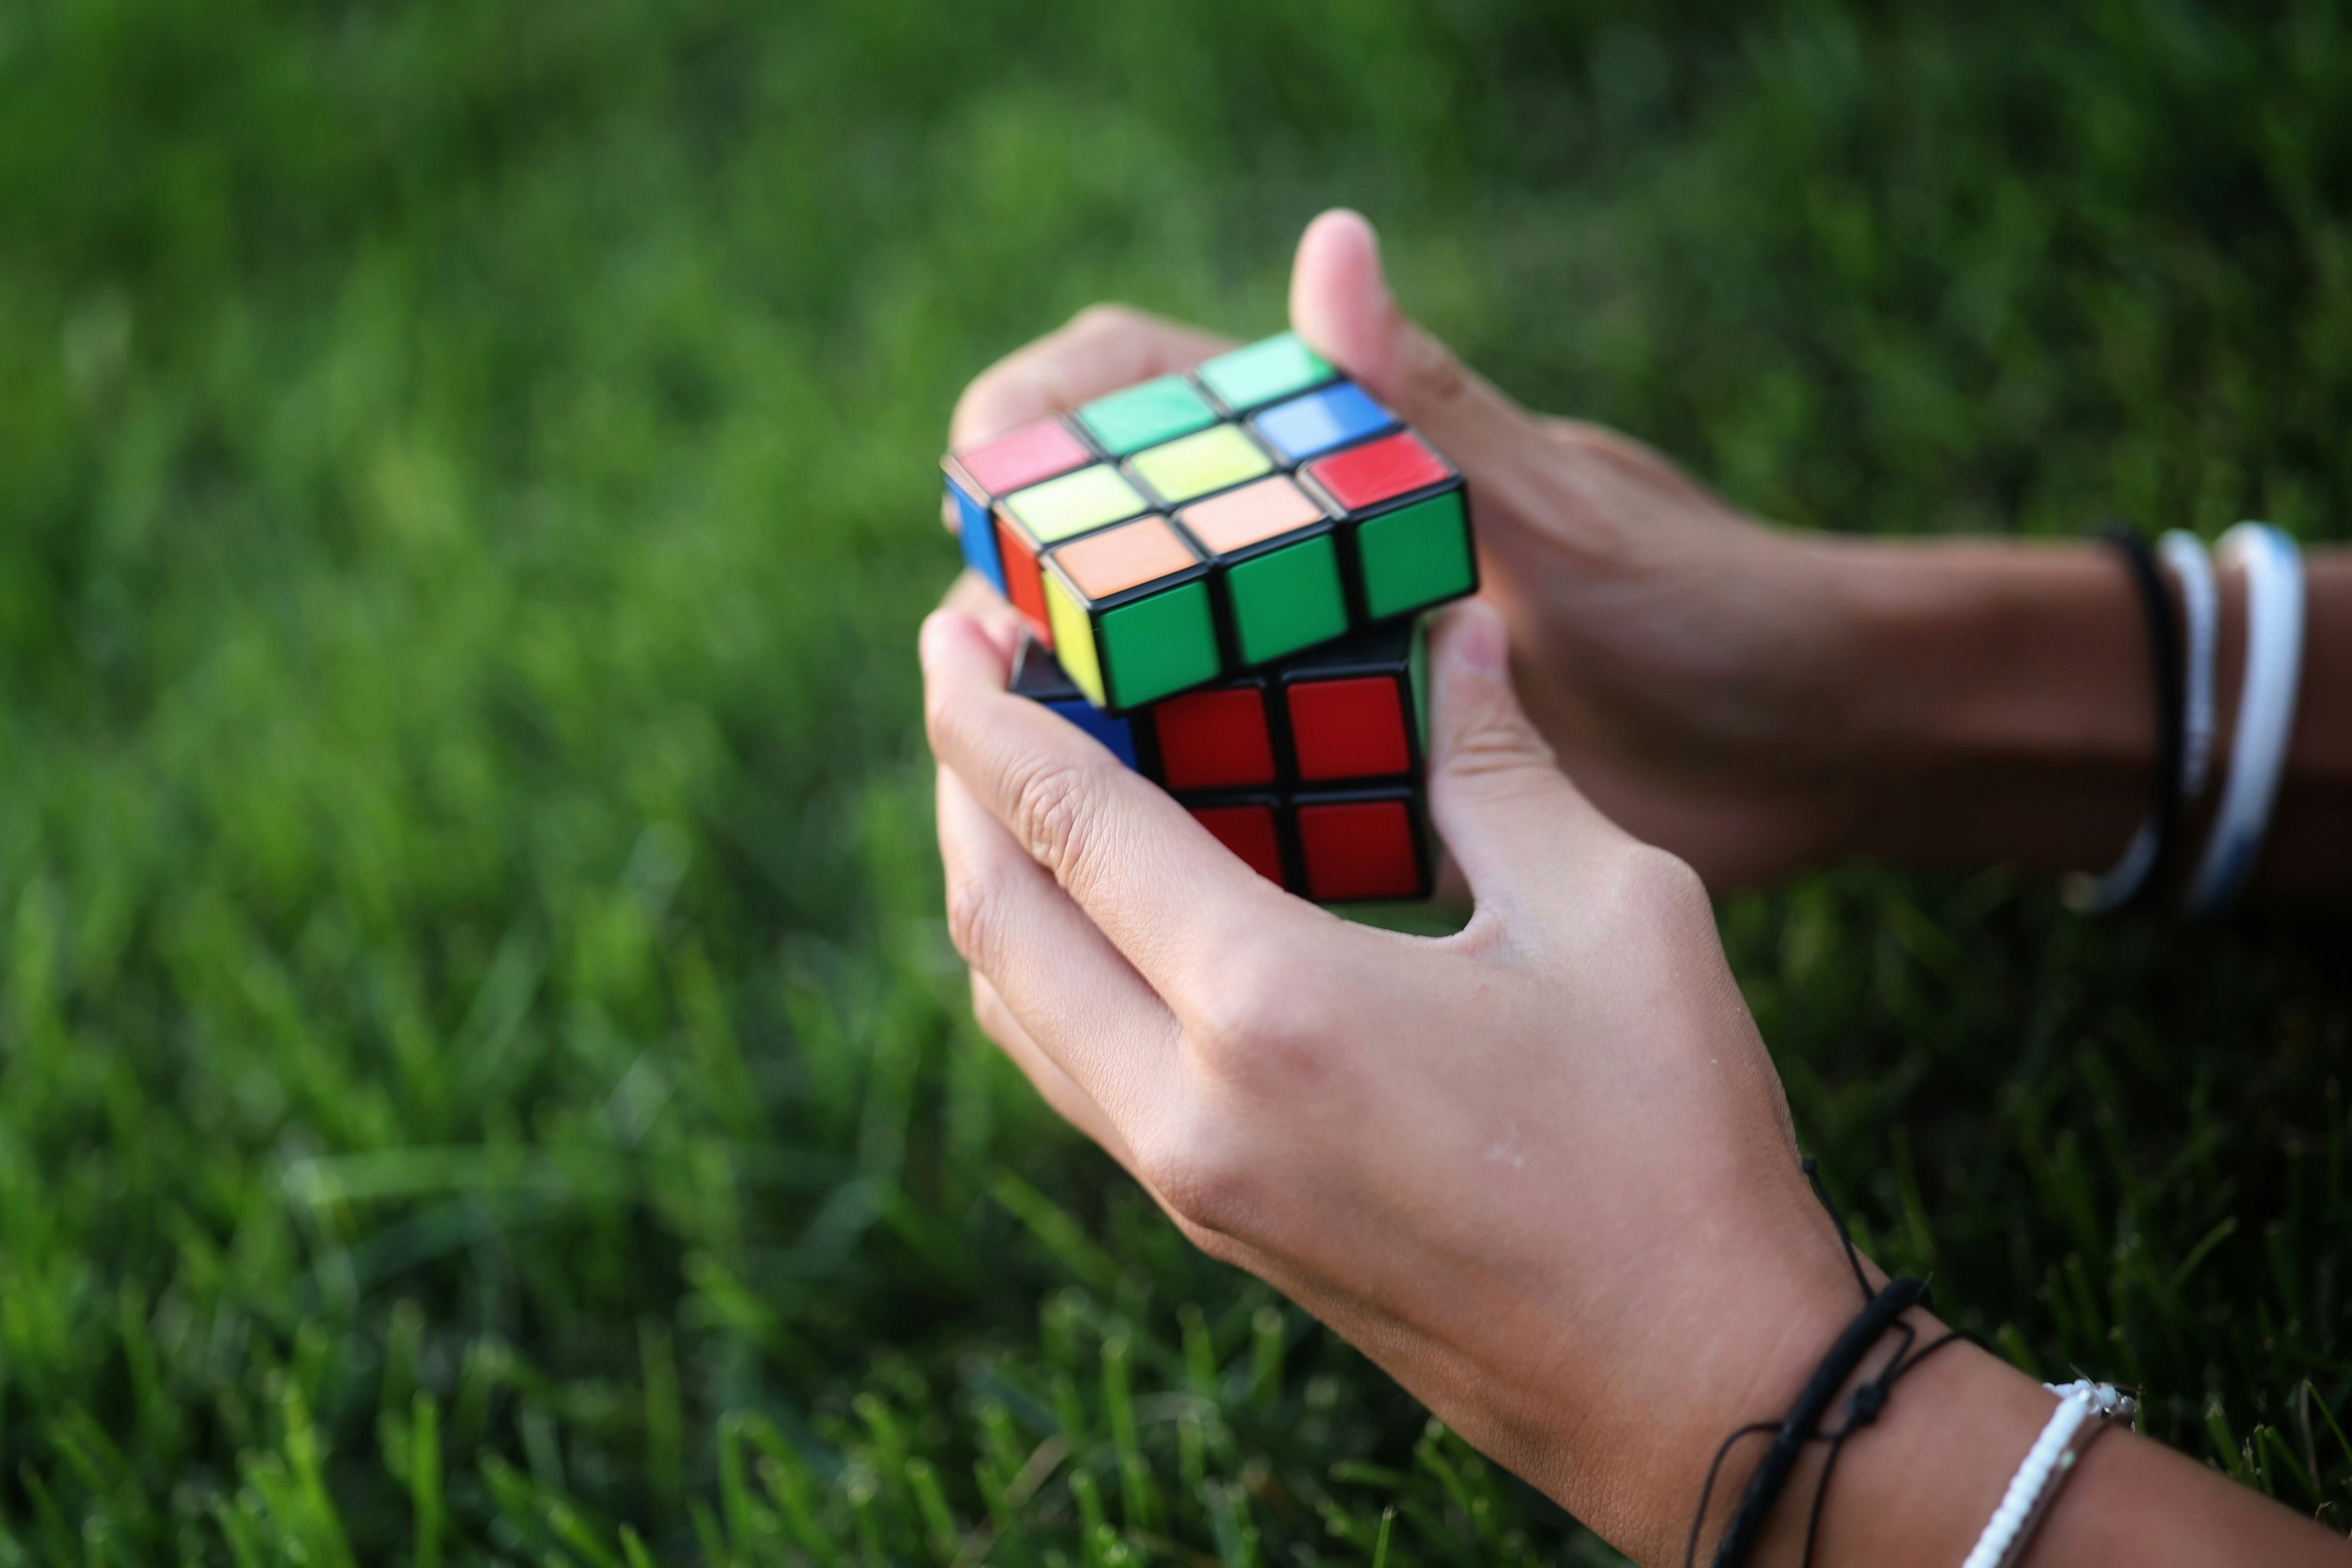 Juegos para fortalecer la memoria: cubo de Rubik